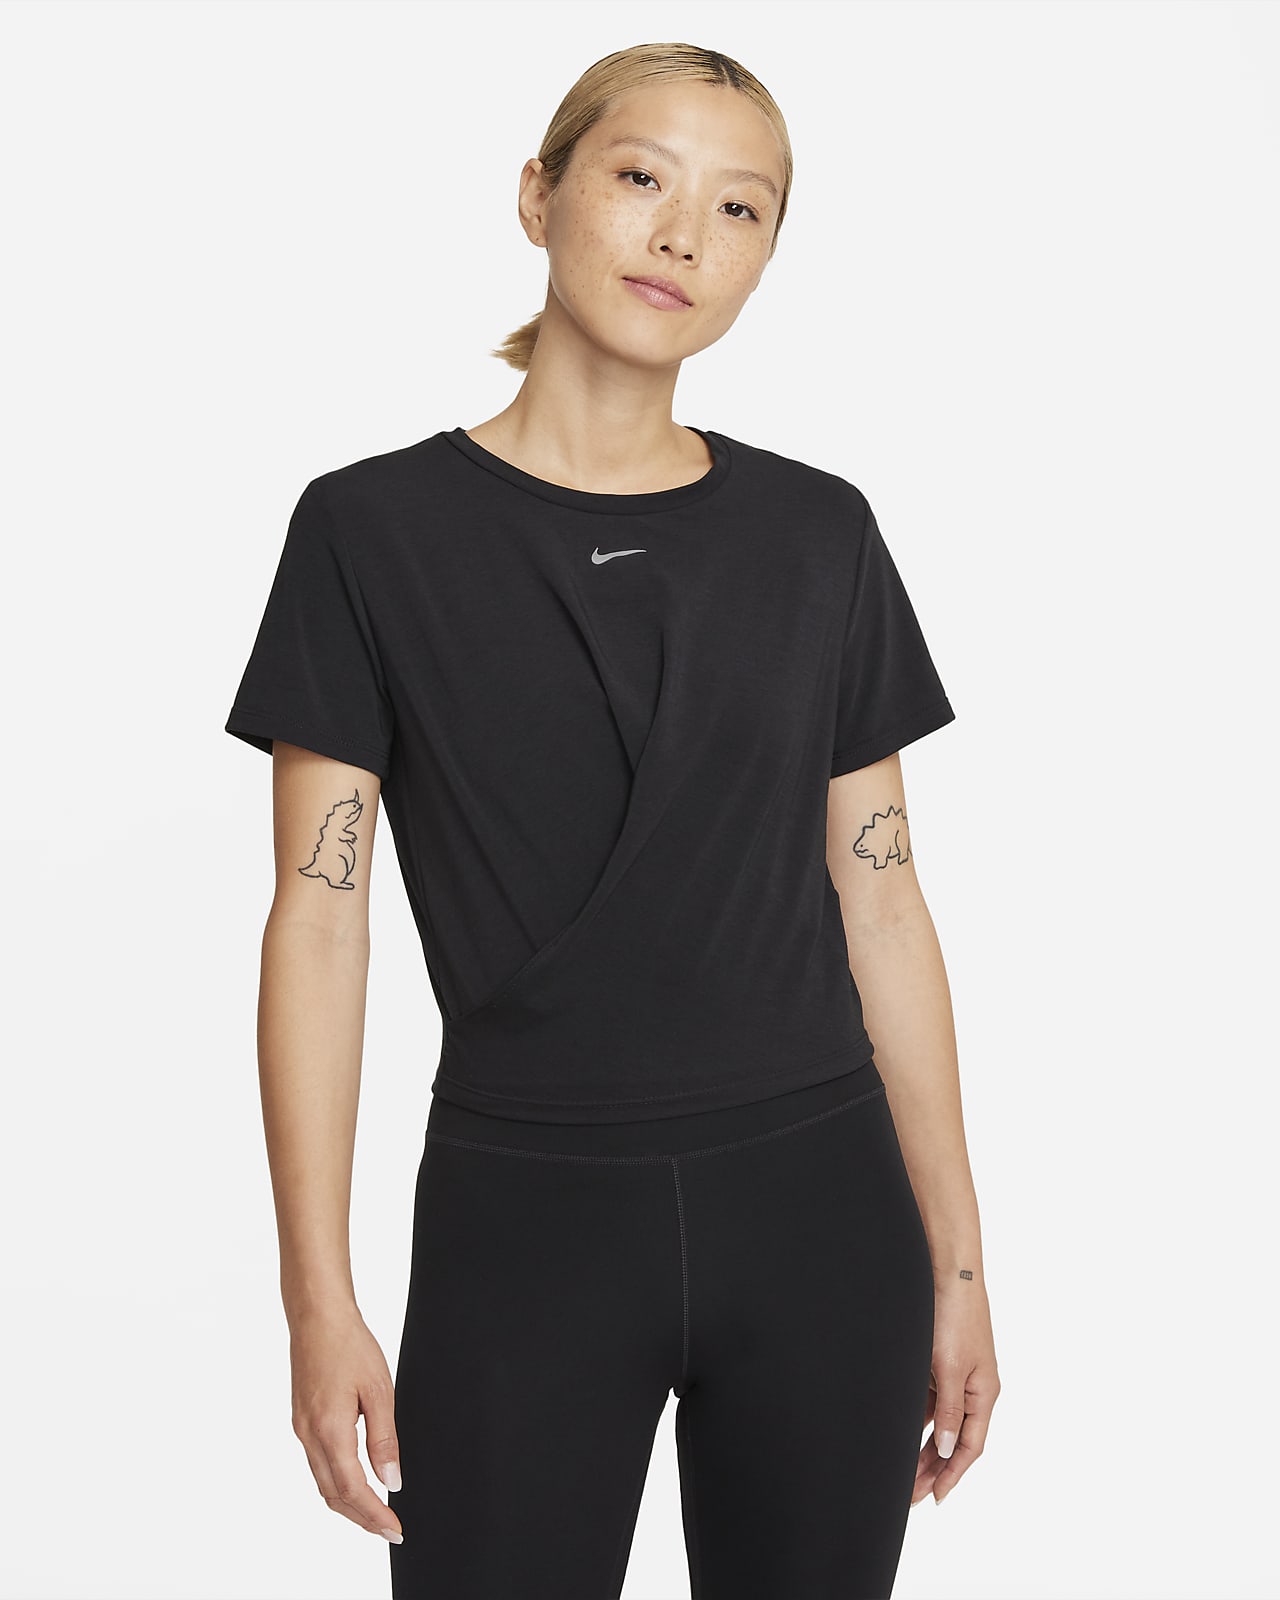 Nike Dri-FIT One Luxe Women's Twist Standard Fit Short-Sleeve Top. Nike ID